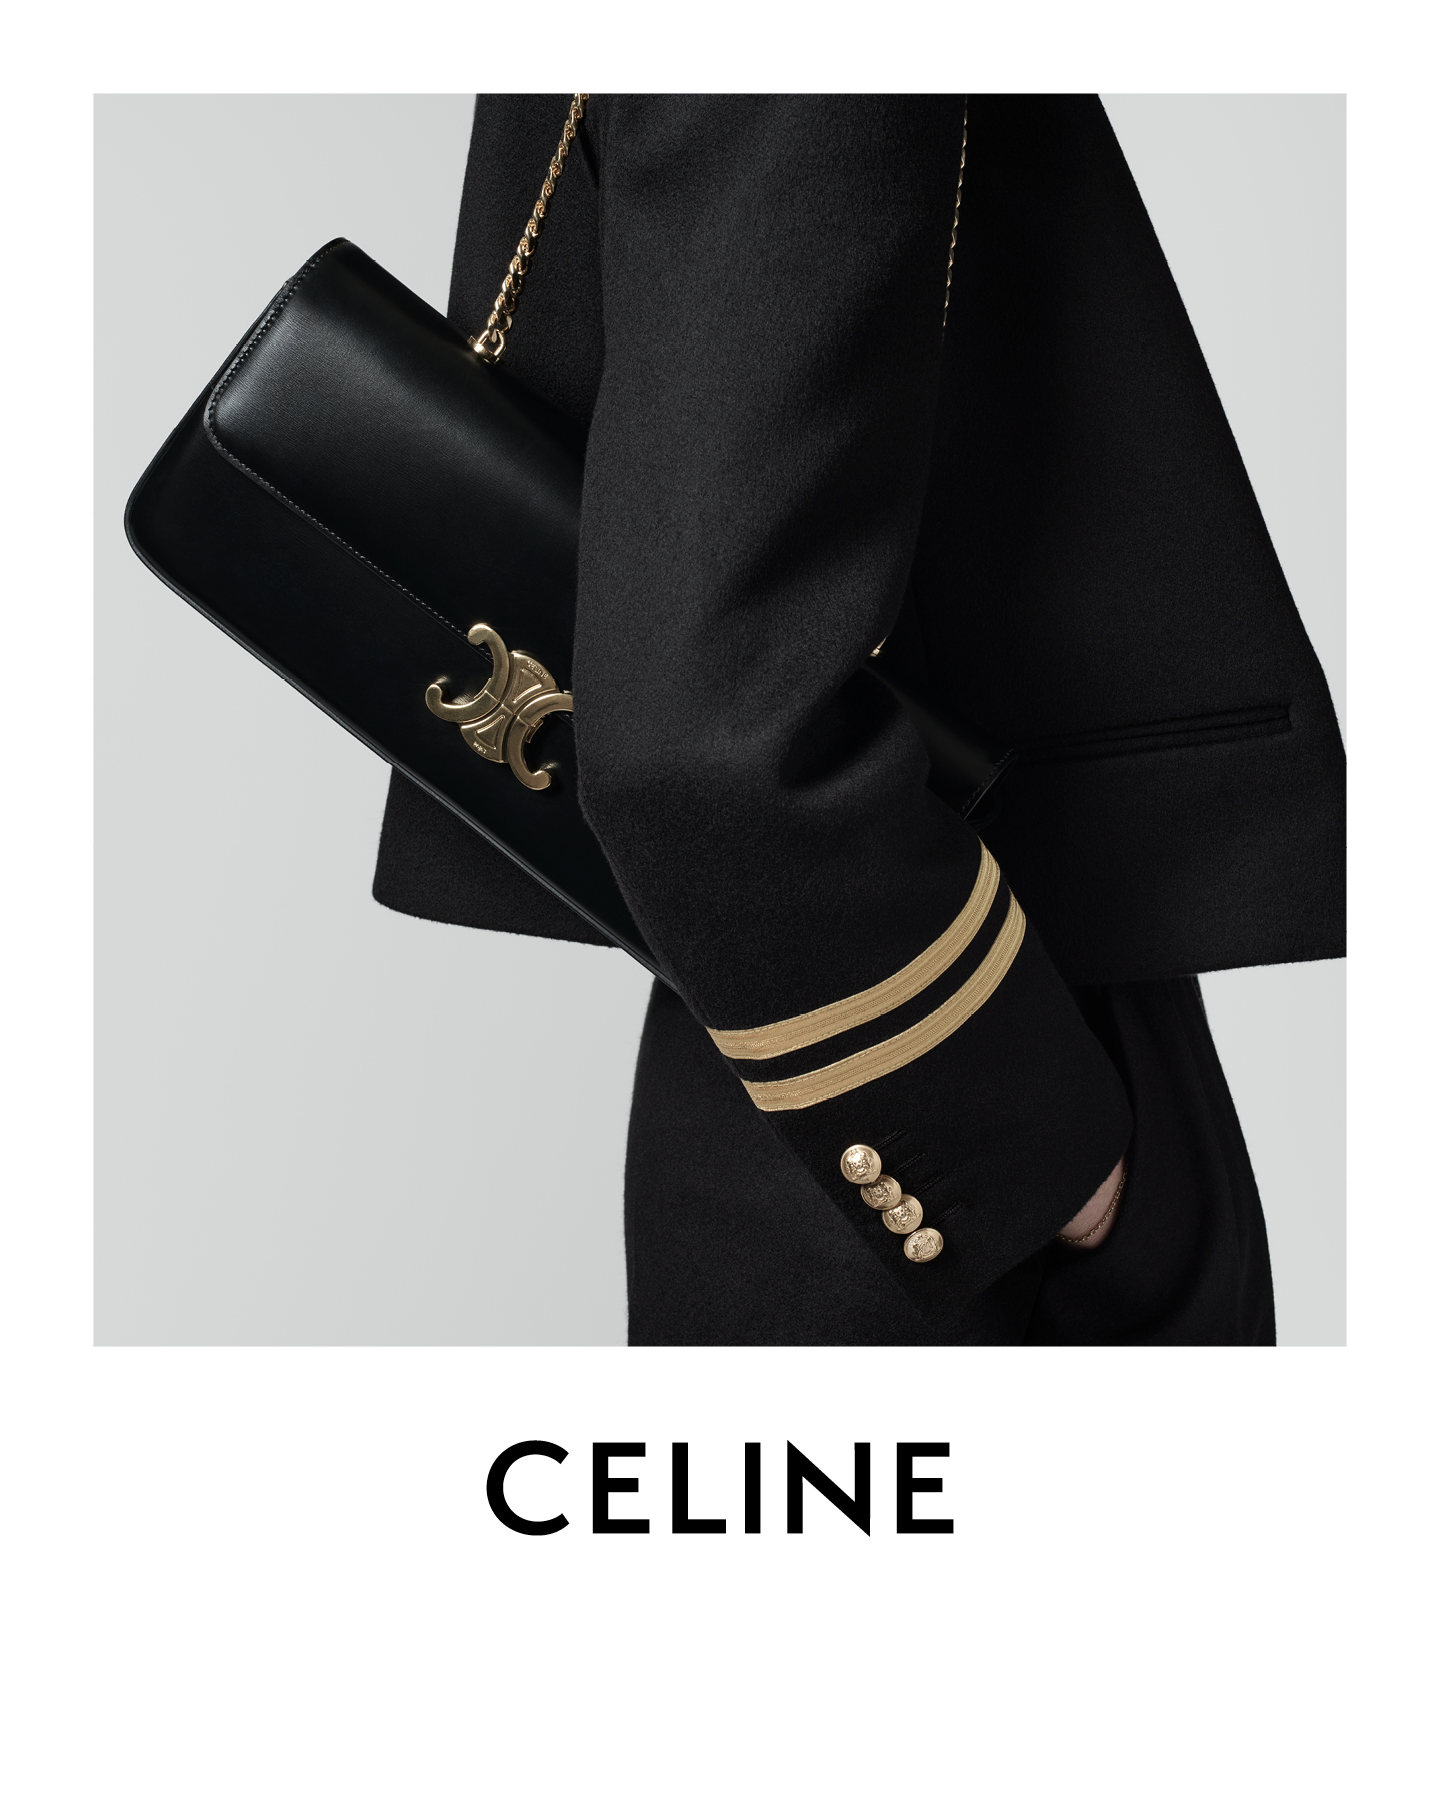 Celine Triomphe Shoulder Bag in White